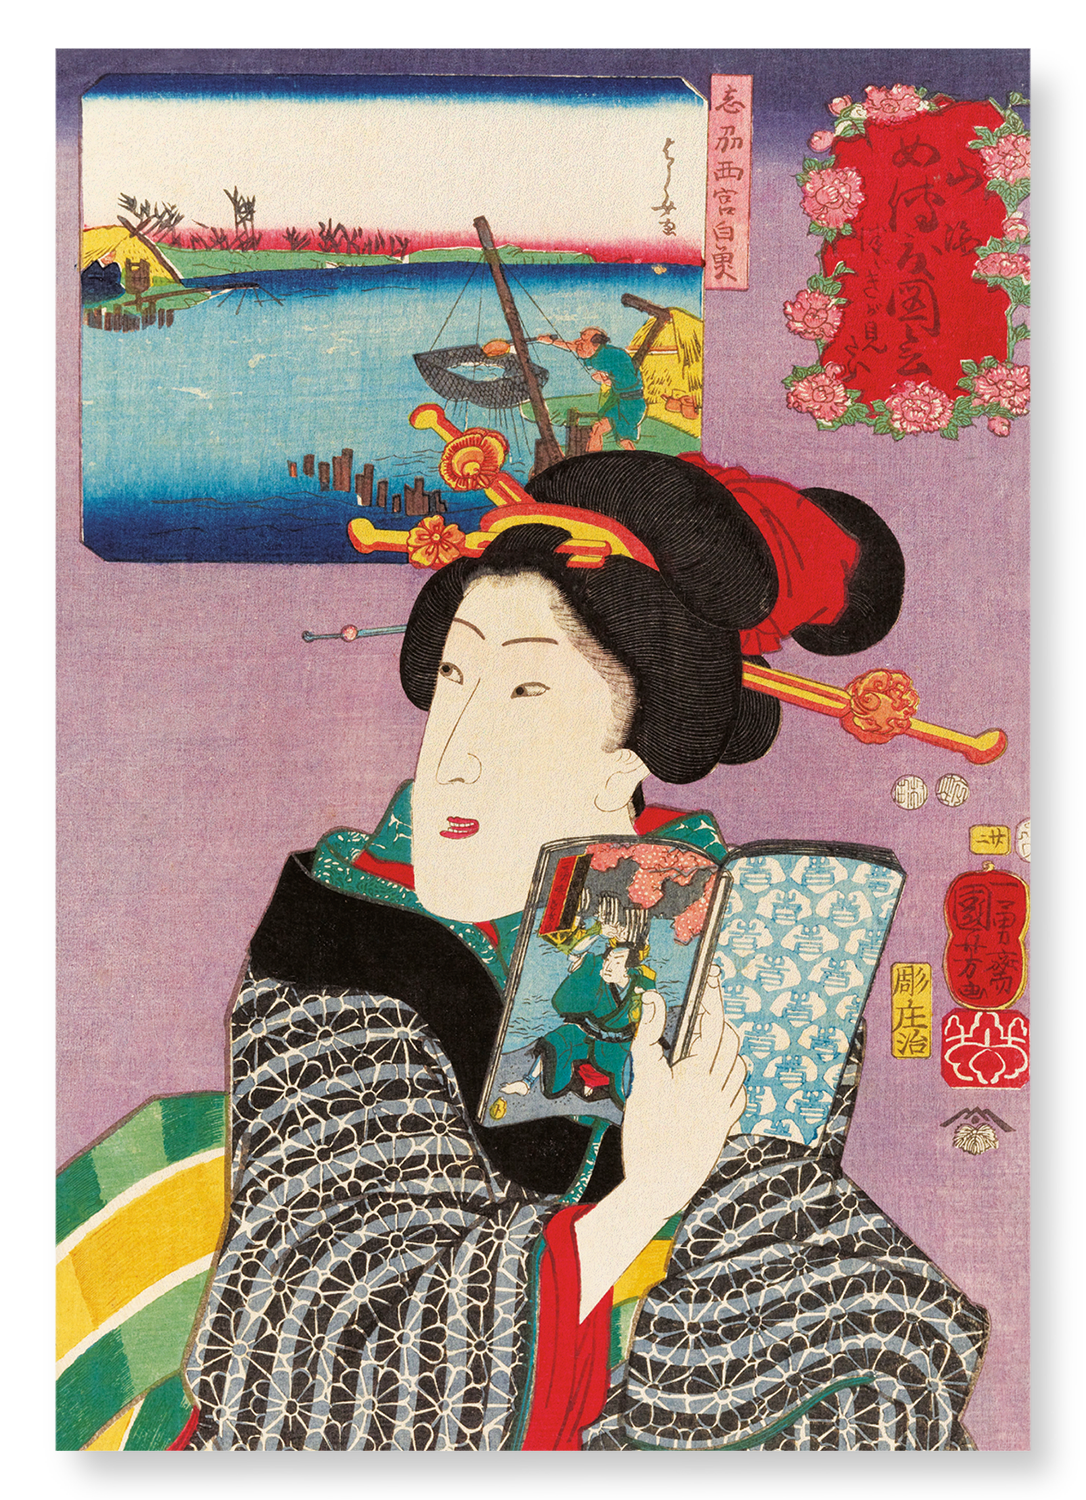 FEELING LIKE READING THE NEXT VOLUME: Japanese Art Print